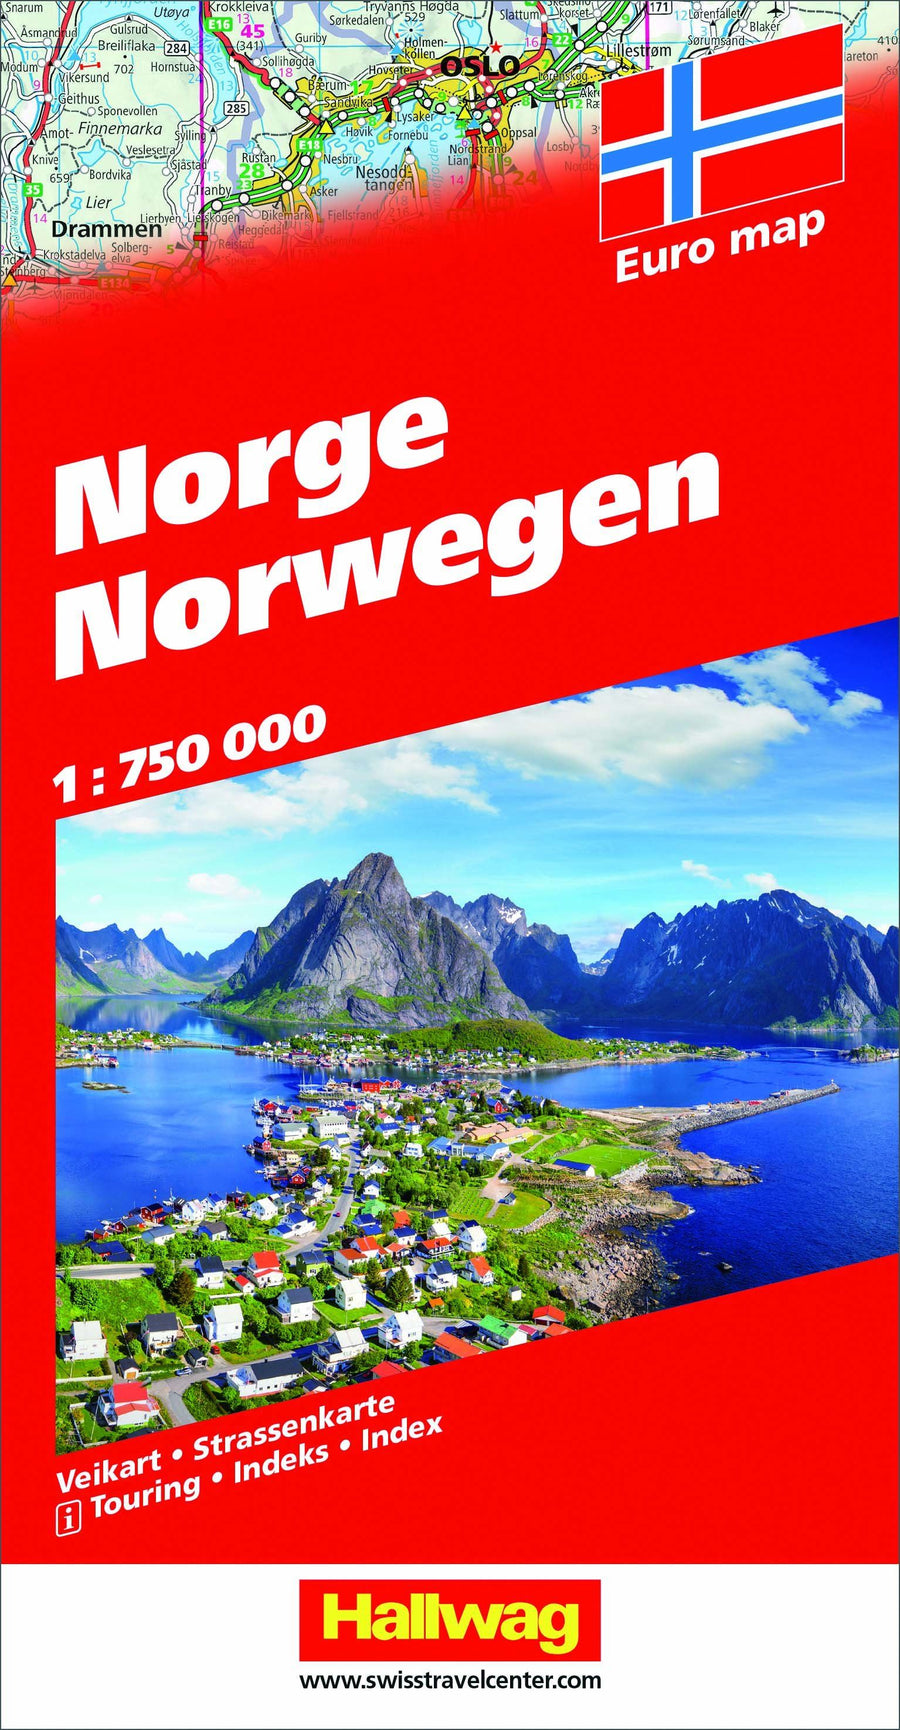 Carte routière - Norvège | Hallwag carte pliée Hallwag 